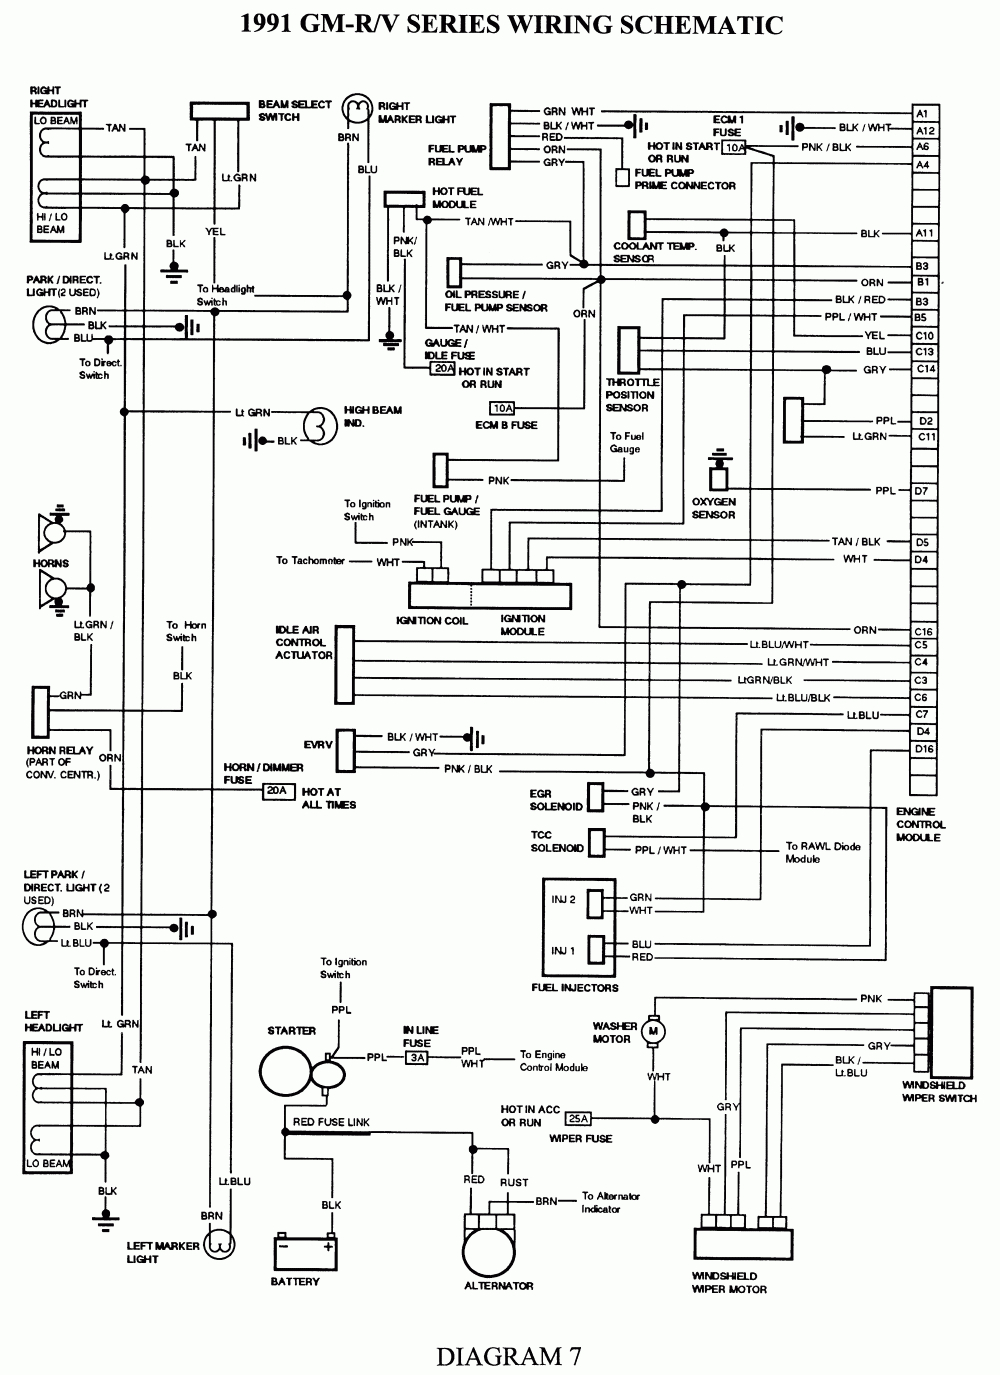 1989 Chevy Tbi Wiring - Data Wiring Diagram Schematic - 1989 Chevy Truck Fuel Pump Wiring Diagram